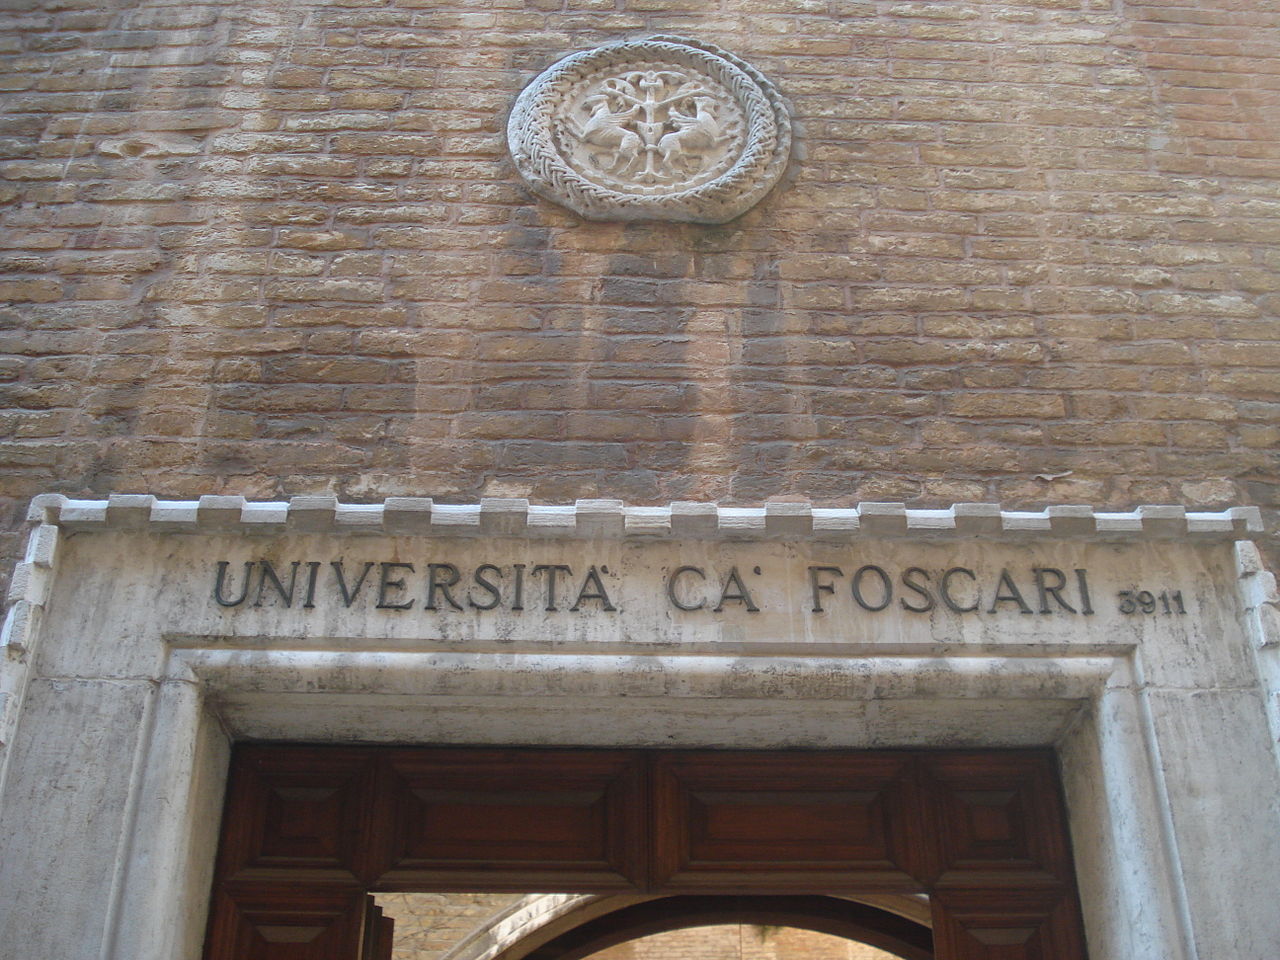 Dipartimento di Scienze Giuridiche of the Università Ca' Foscari, Venezia. Entrance